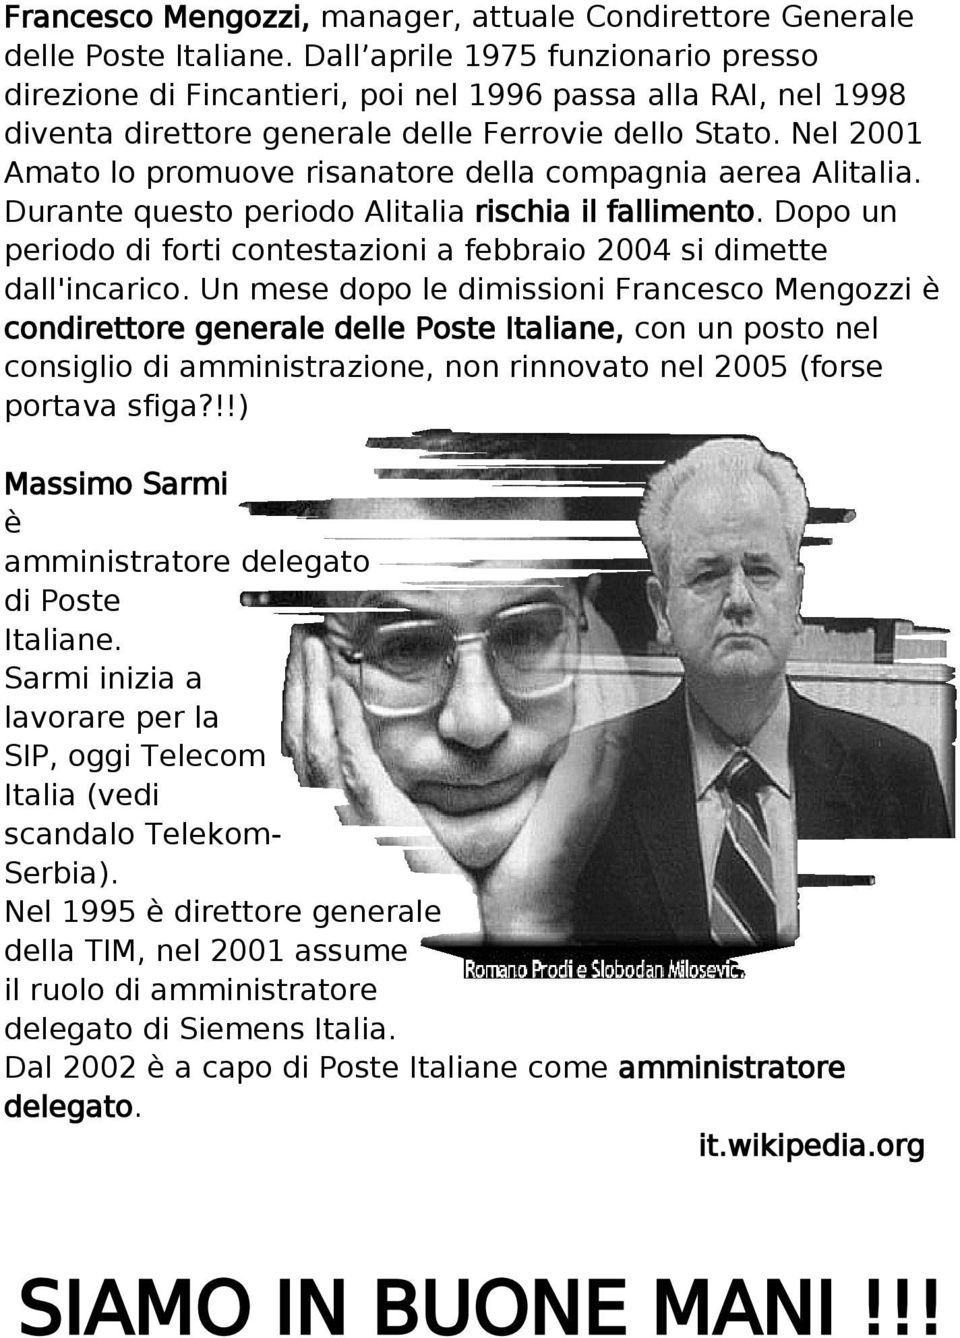 Nel 2001 Amato lo promuove risanatore della compagnia aerea Alitalia. Durante questo periodo Alitalia rischia il fallimento.